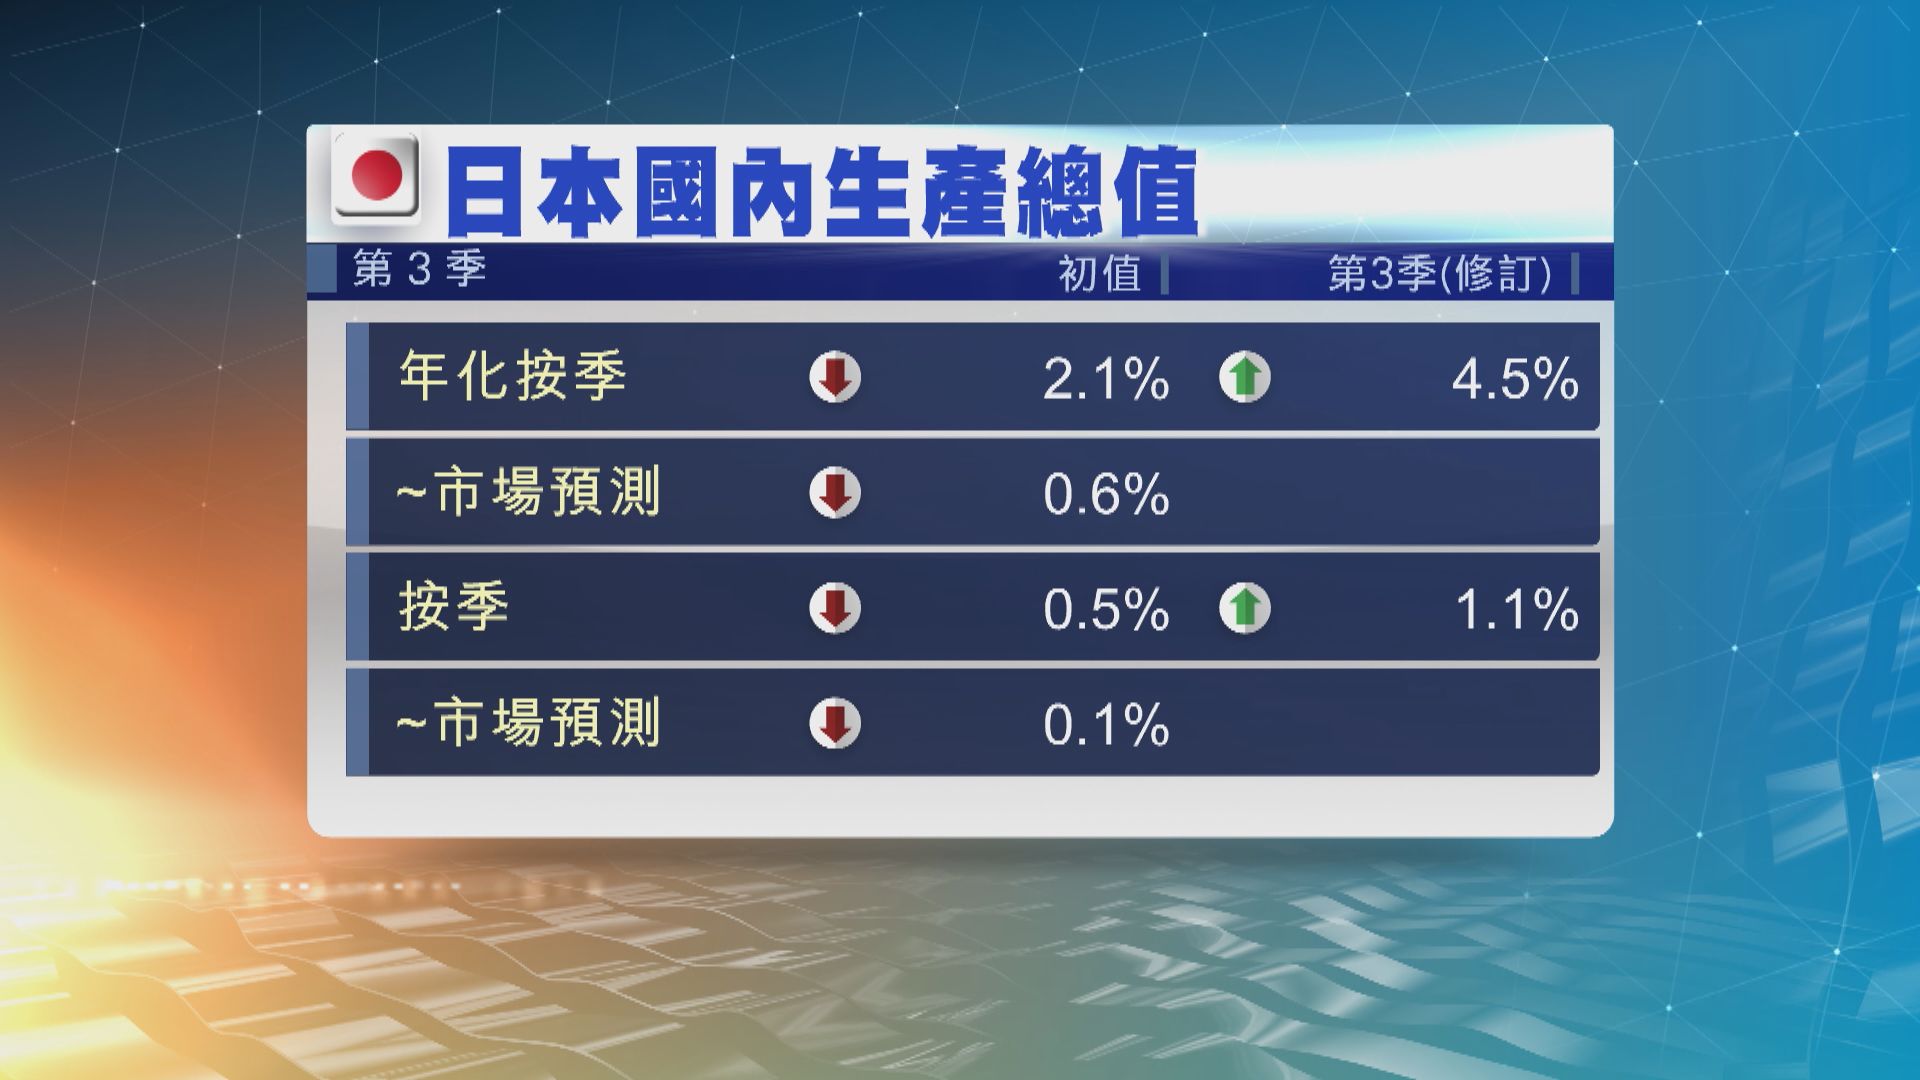 日本第3季經濟萎縮2.1% 遠遜預期